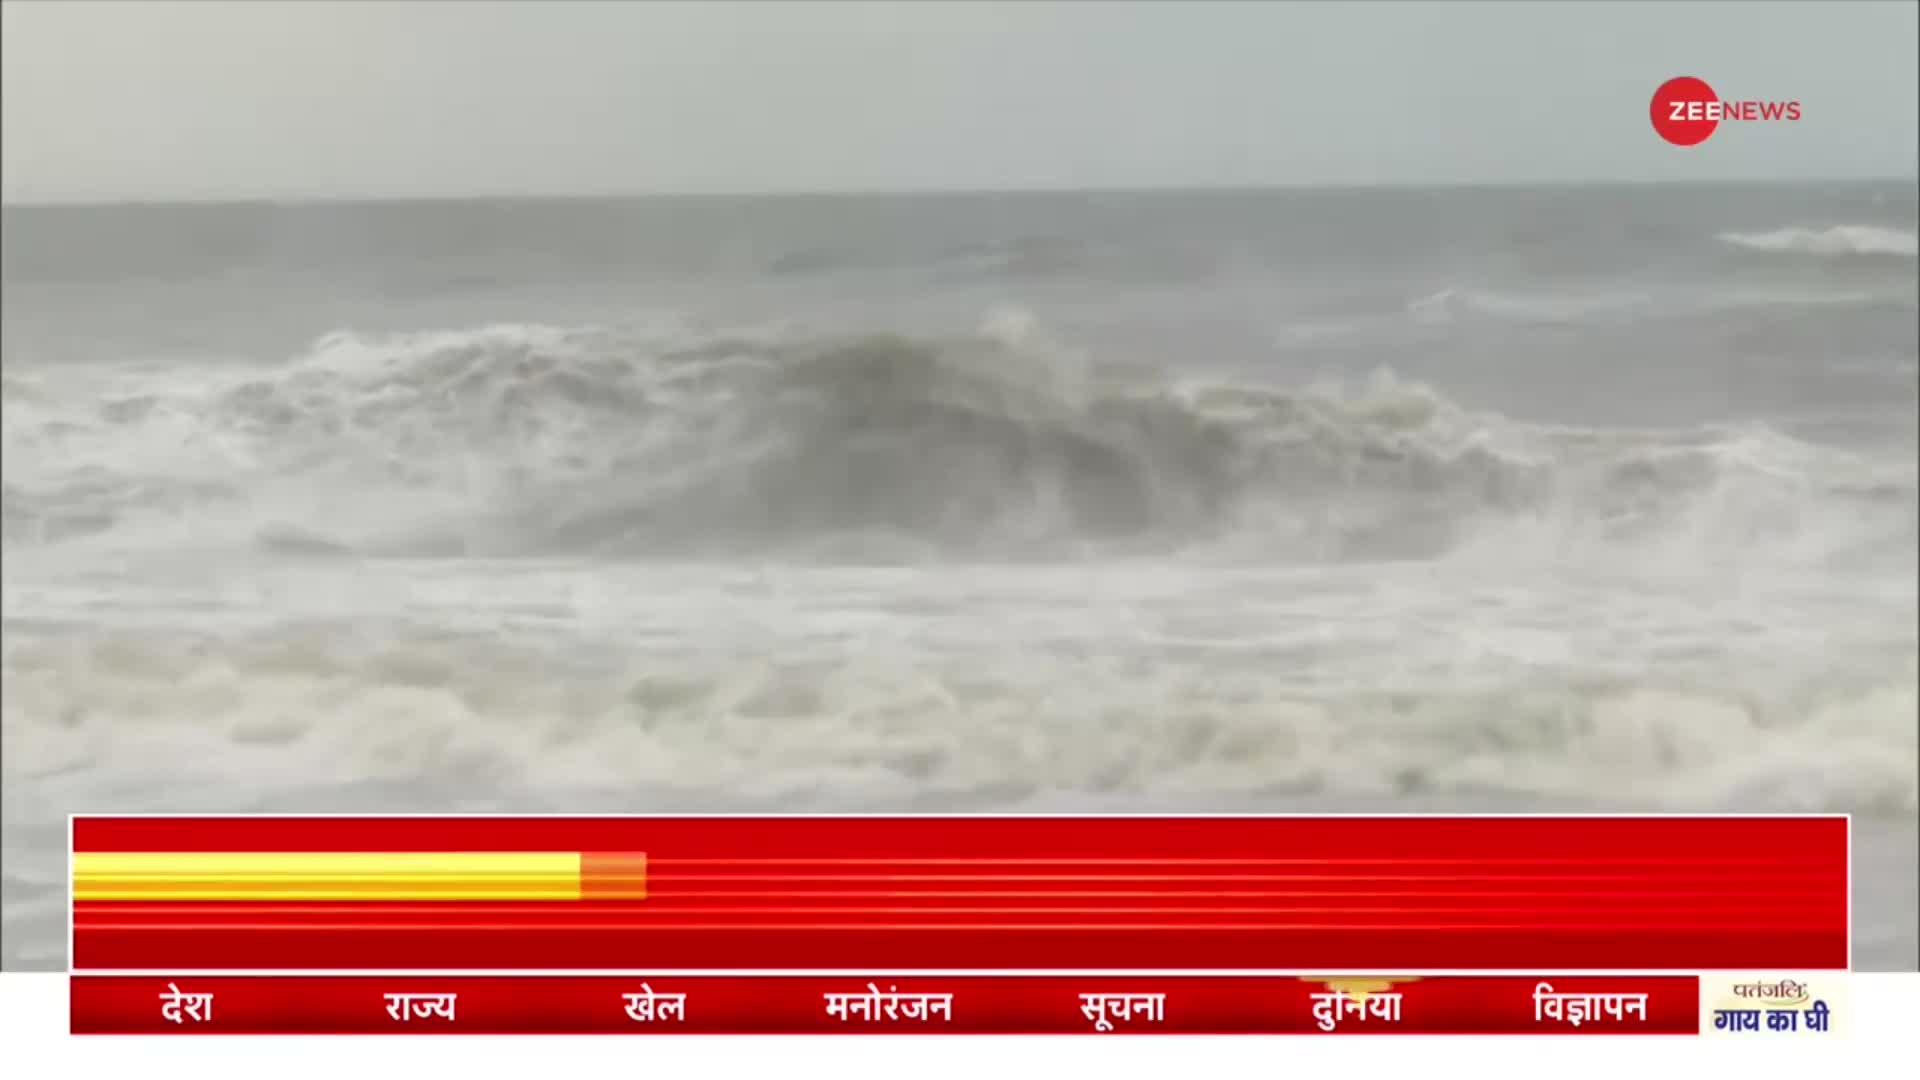 Cyclone Mandous Update: Tamil Nadu के तटीय इलाके से टकराया मैंडूस तूफ़ान, SDRF-NDRF तैनात की गई